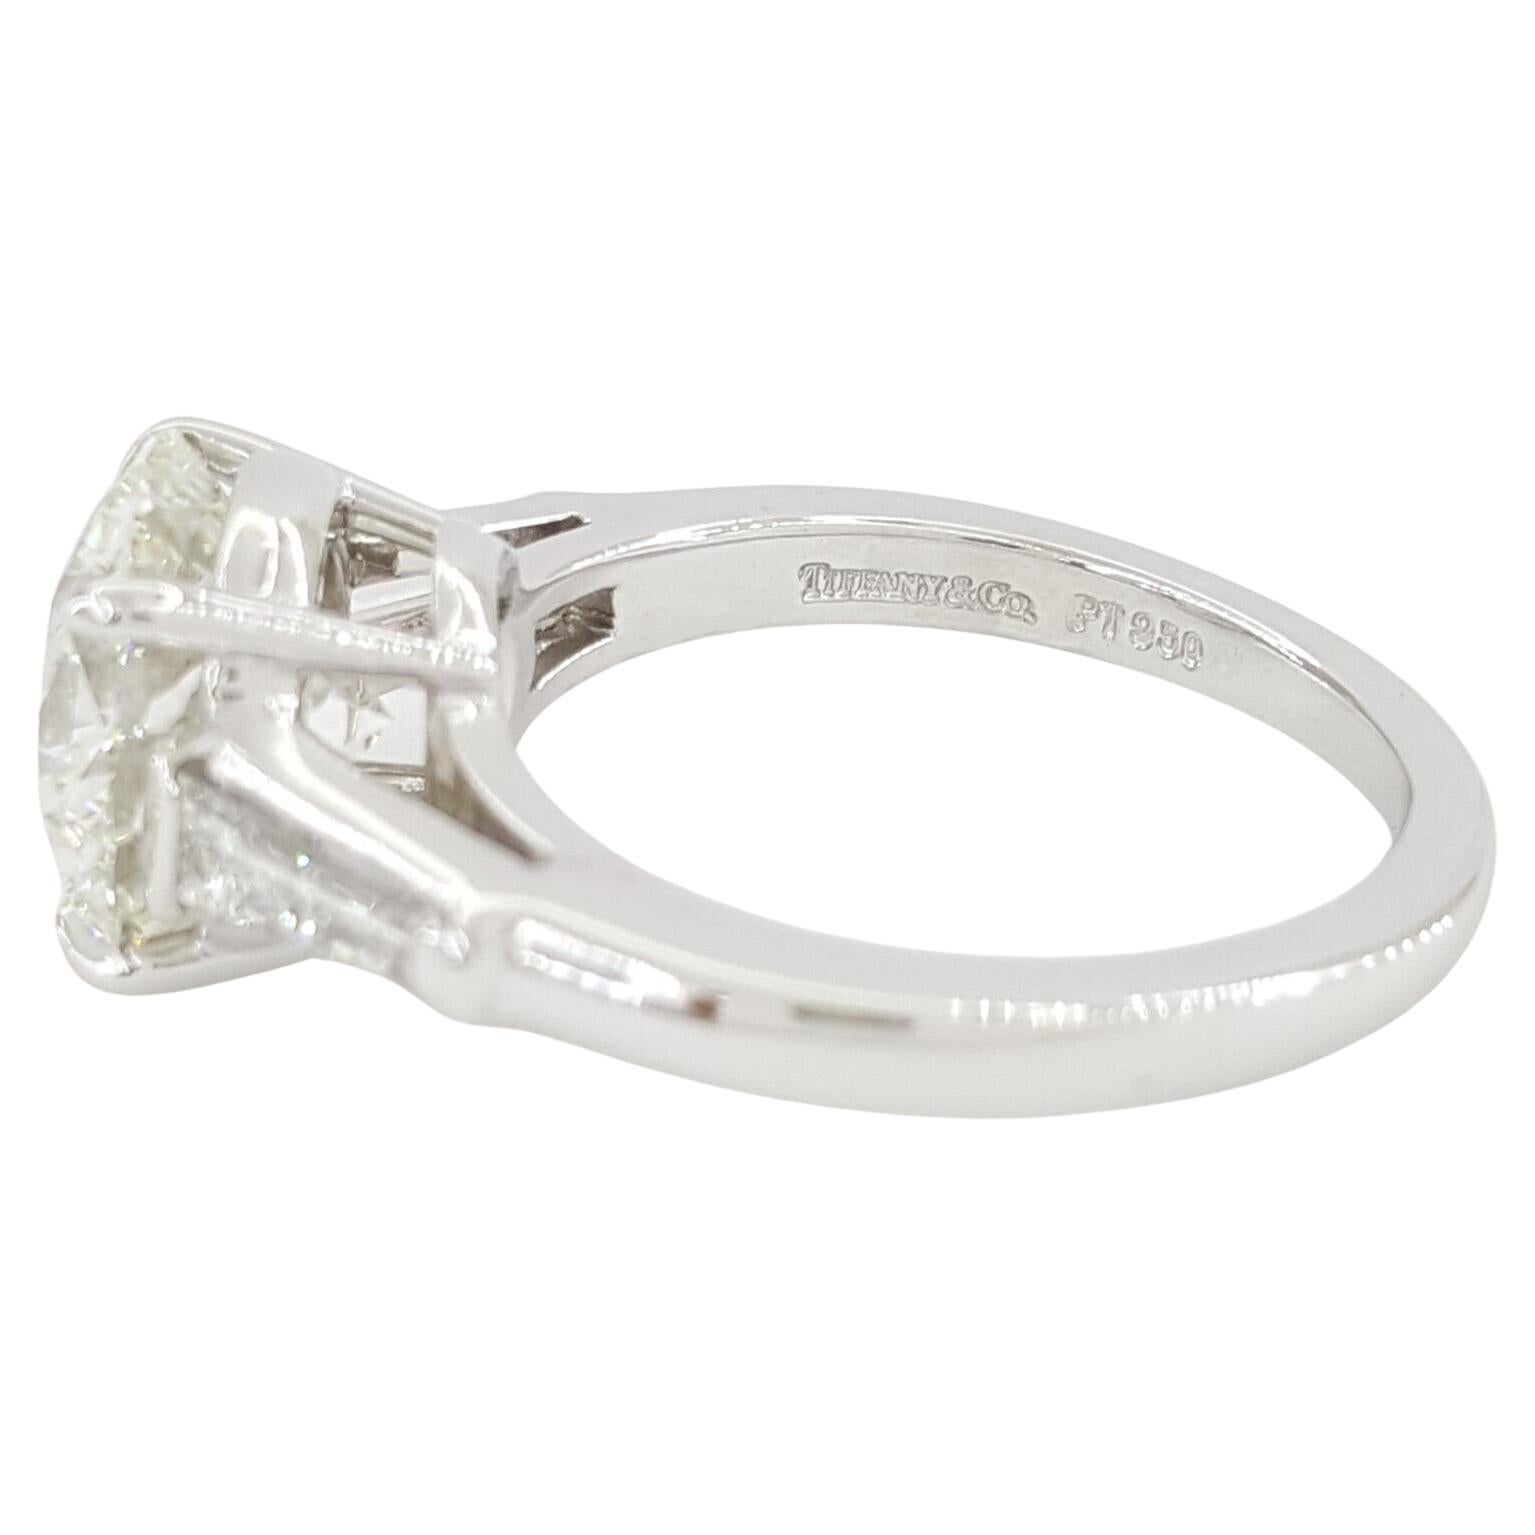  Tiffany & Co. 3.83 ct Gesamtgewicht Platin Runde Brillantschliff Diamant Drei Stein Verlobungsring. 



Der Ring wiegt 7,9 Gramm, Größe 5,5, das Zentrum ist ein natürlicher runder Diamant im Brillantschliff mit einem Gewicht von 3,33 ct, I in